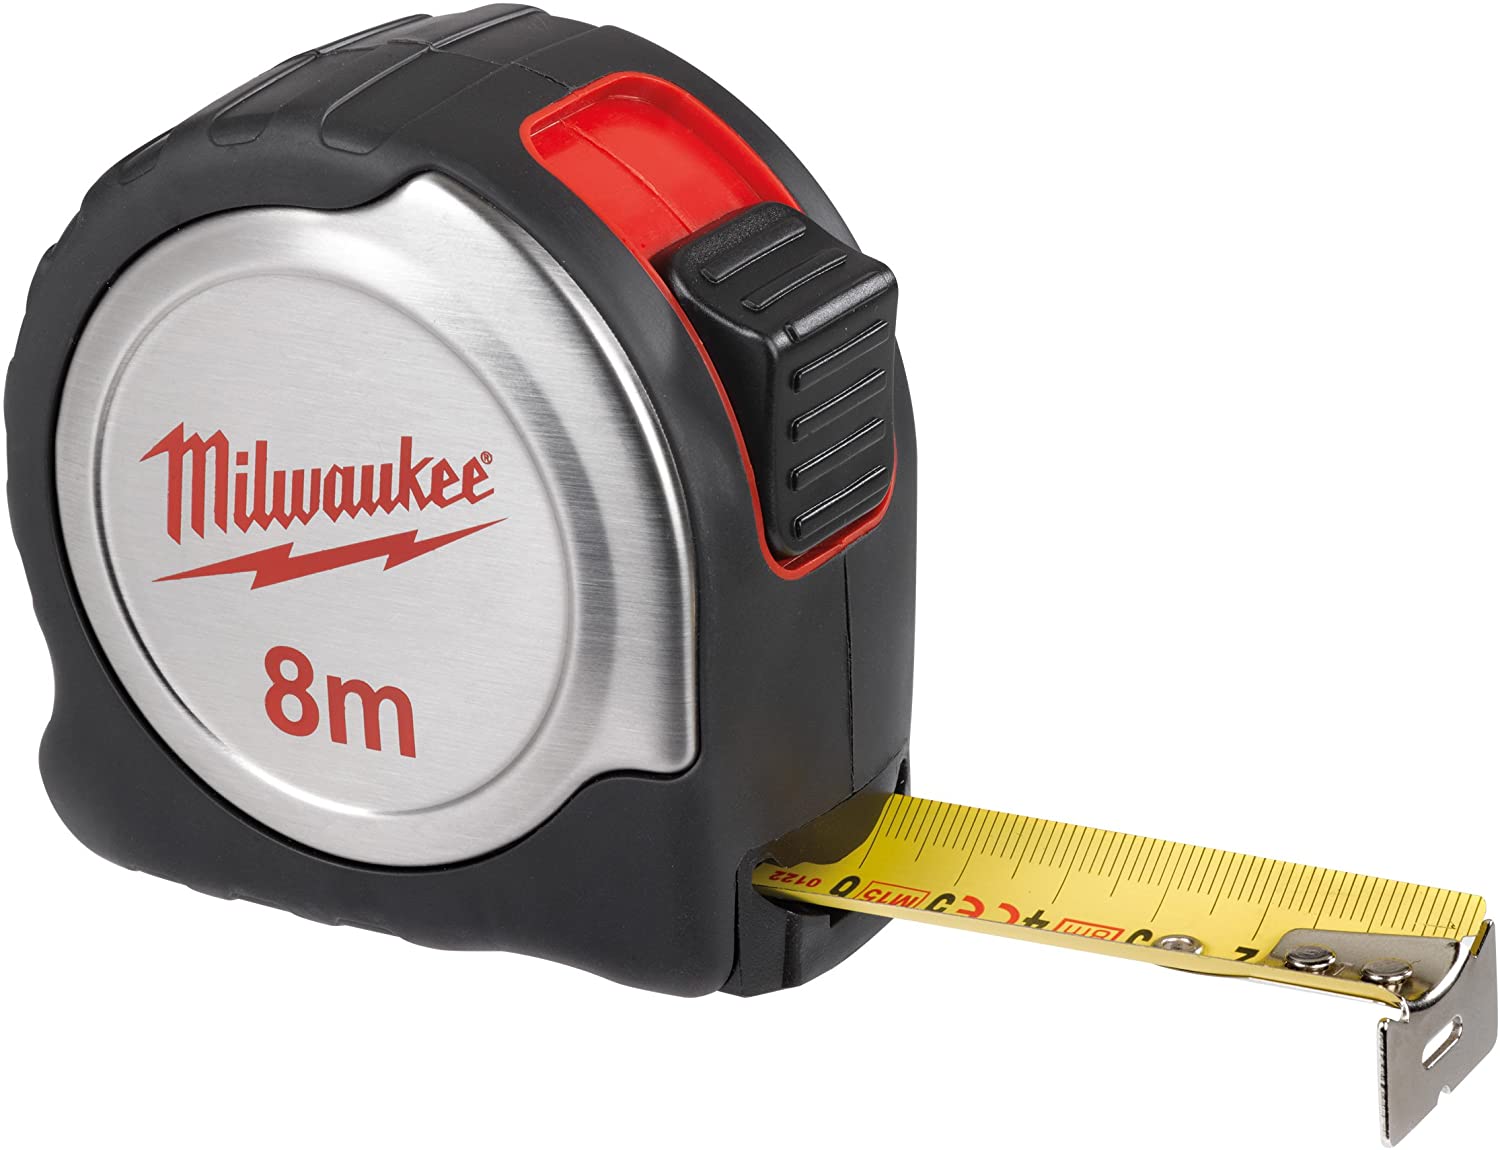 Ruletă de măsurat Milwaukee Silver Compact 8 m, cod 4932451640